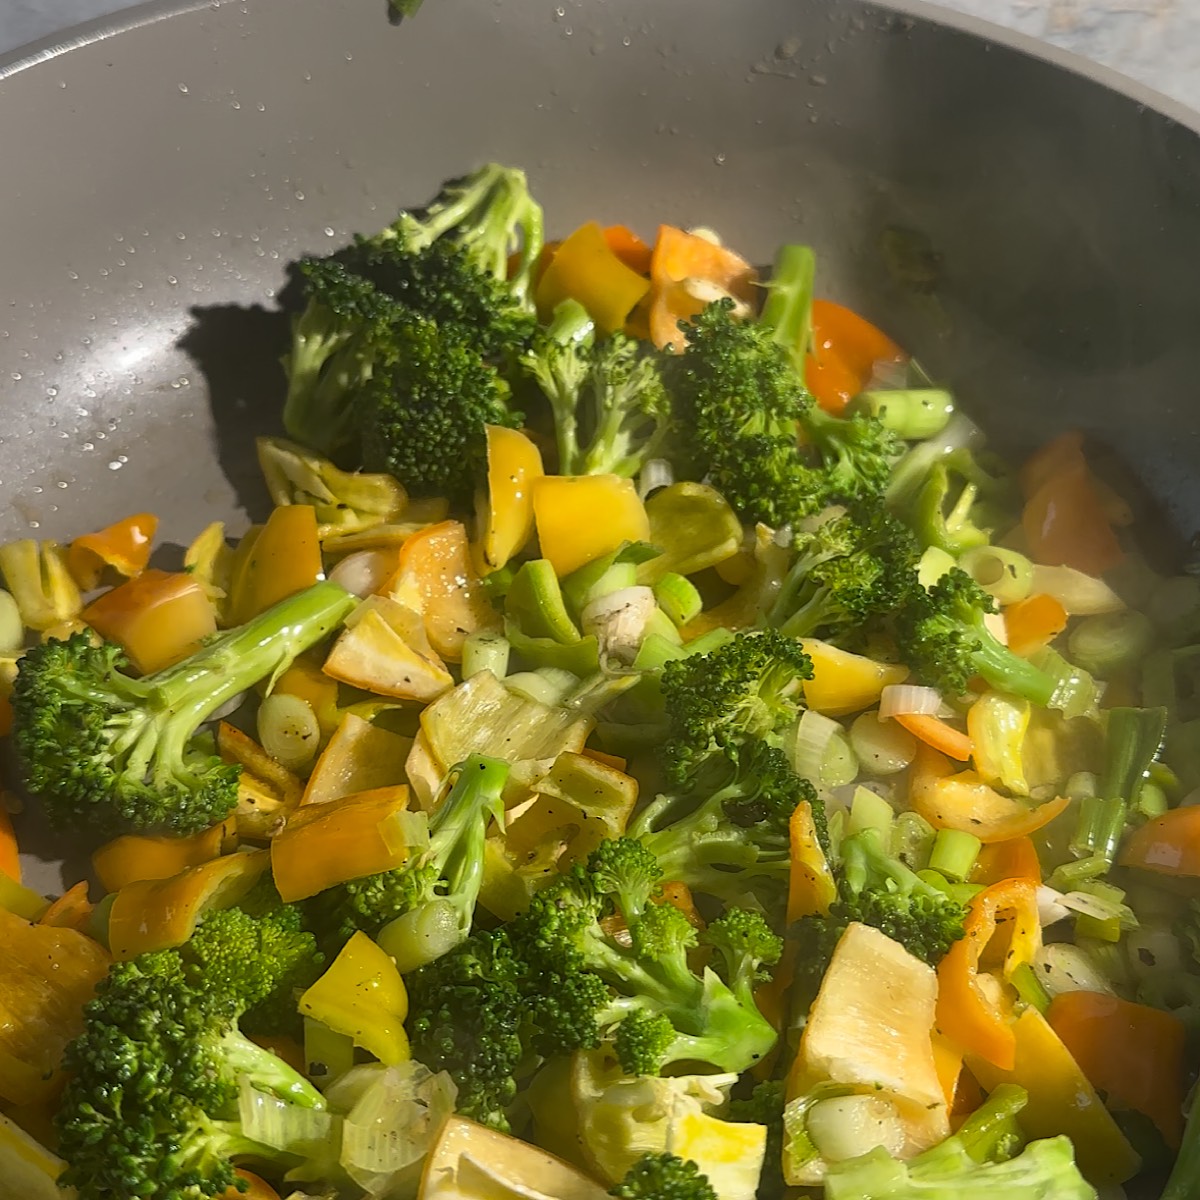 veggies in pan